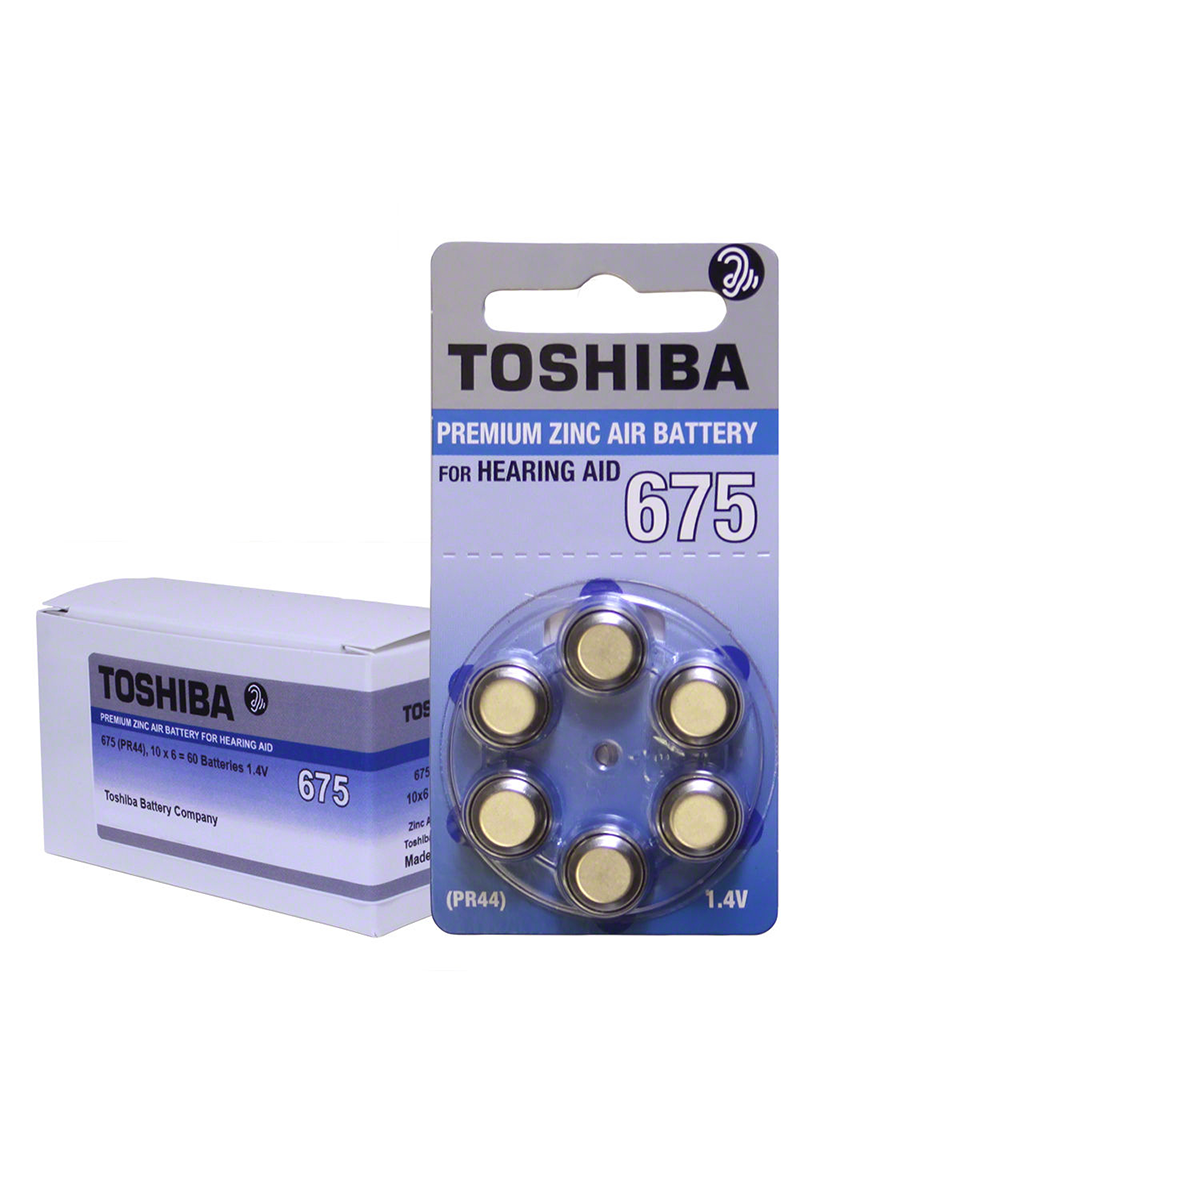 Toshiba 675 Hearing Aid Battery